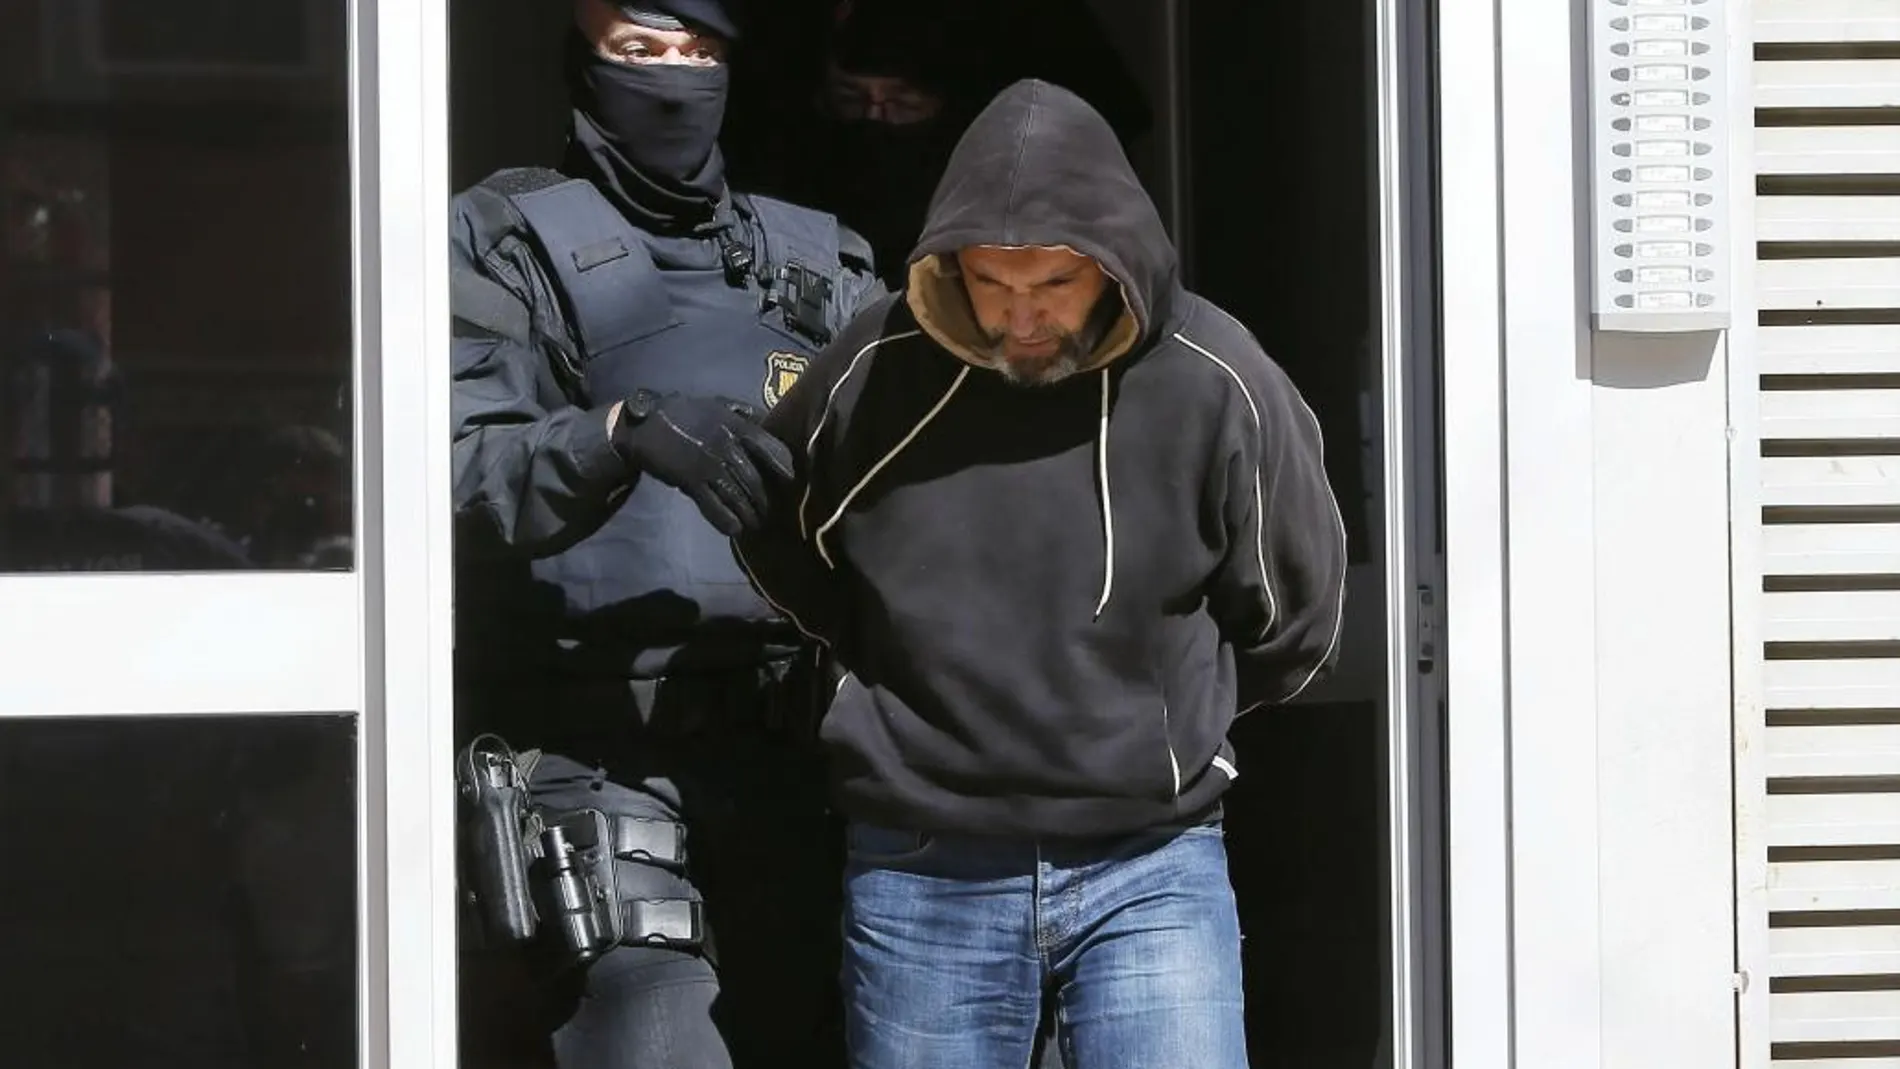 La Policía detiene a uno de los presuntos integrantes de una célula yihadista en Barcelona